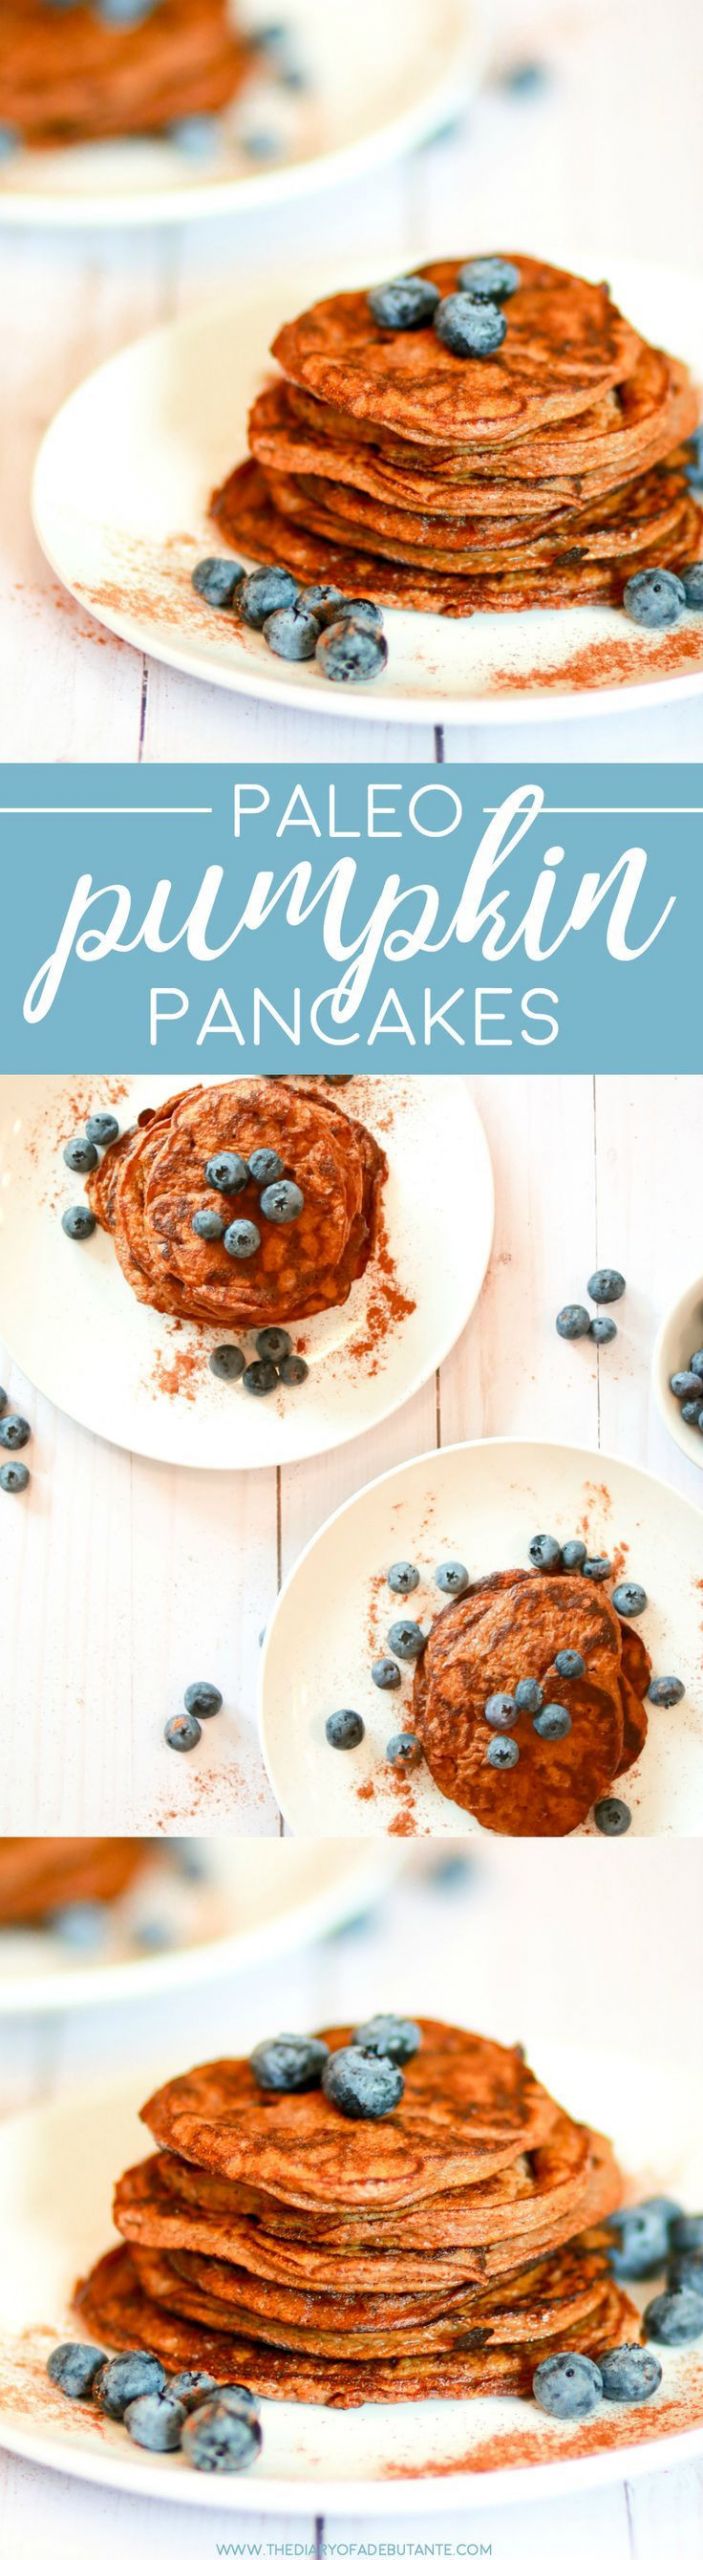 Low Calorie Paleo Recipes
 Paleo pumpkin pancakes recipe such a delicious low